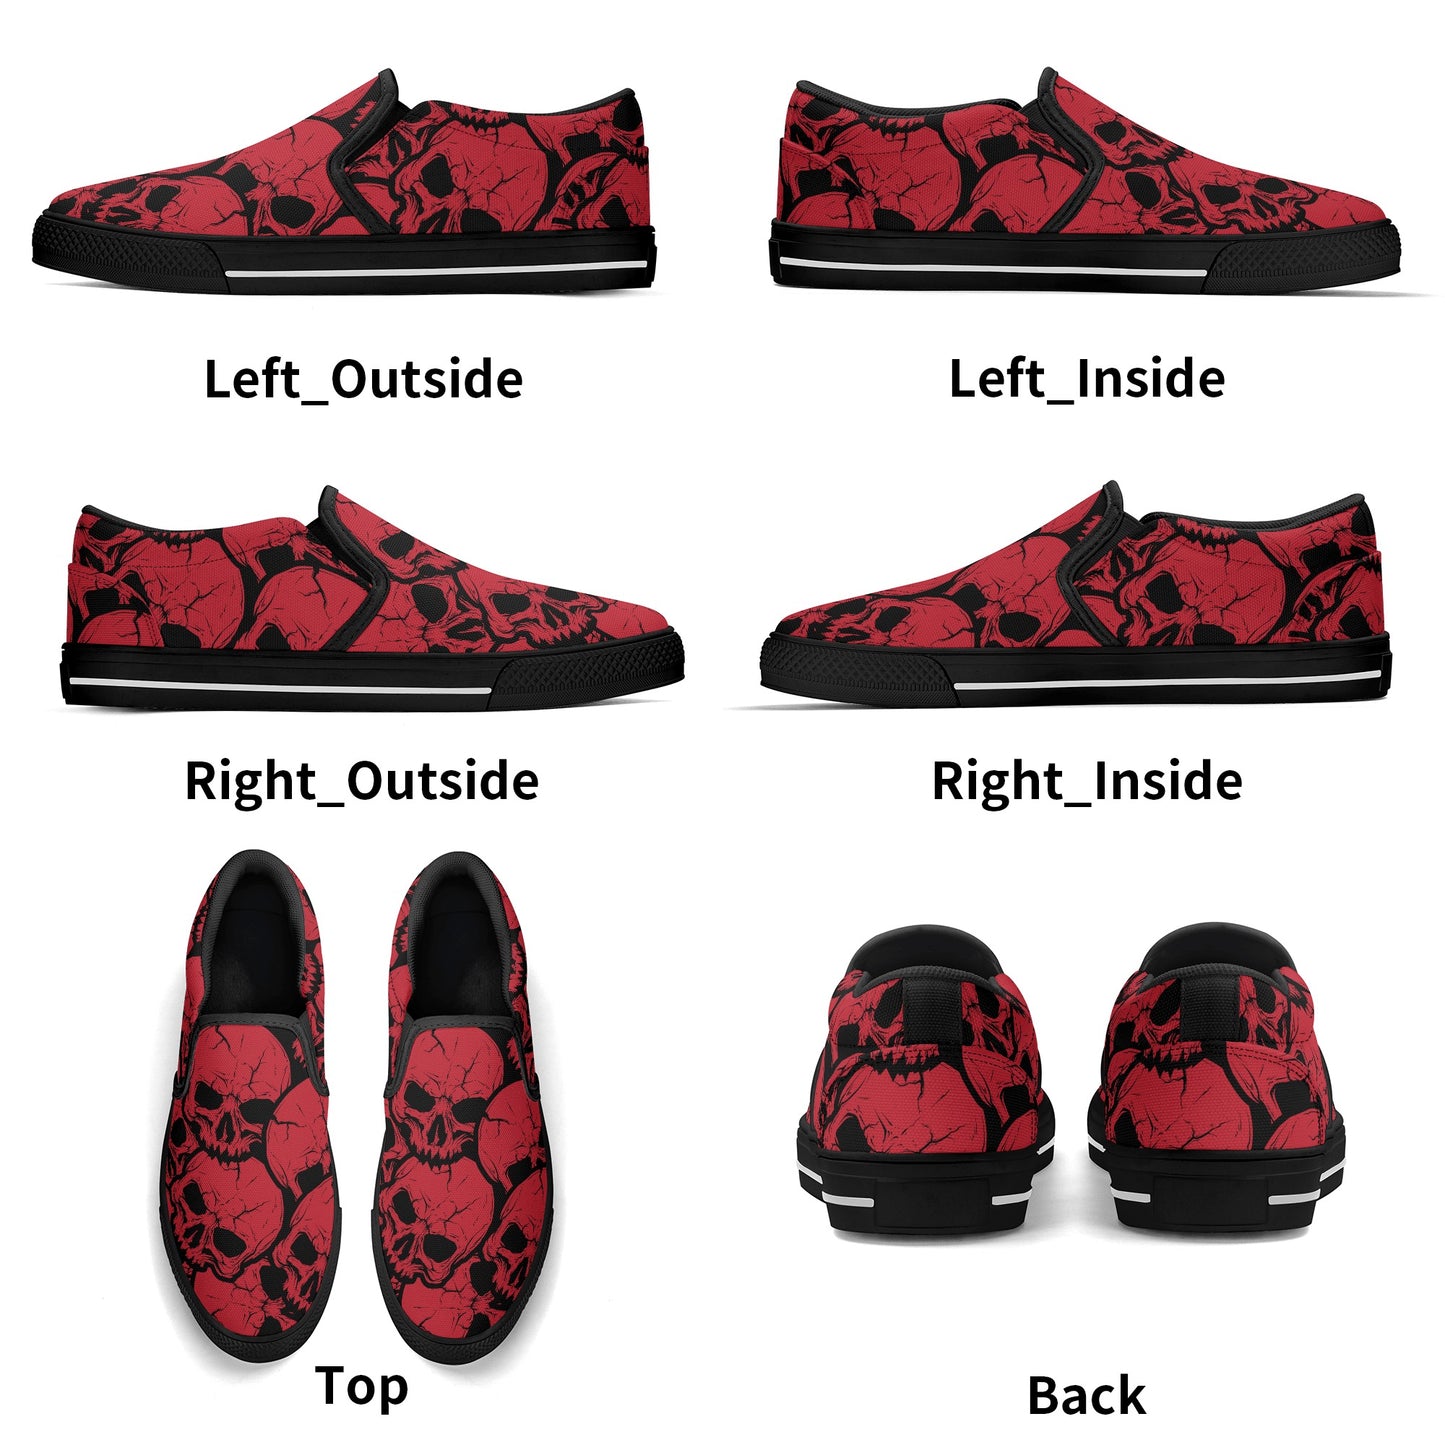 Gothic Red Skull Design Slip On Shoes